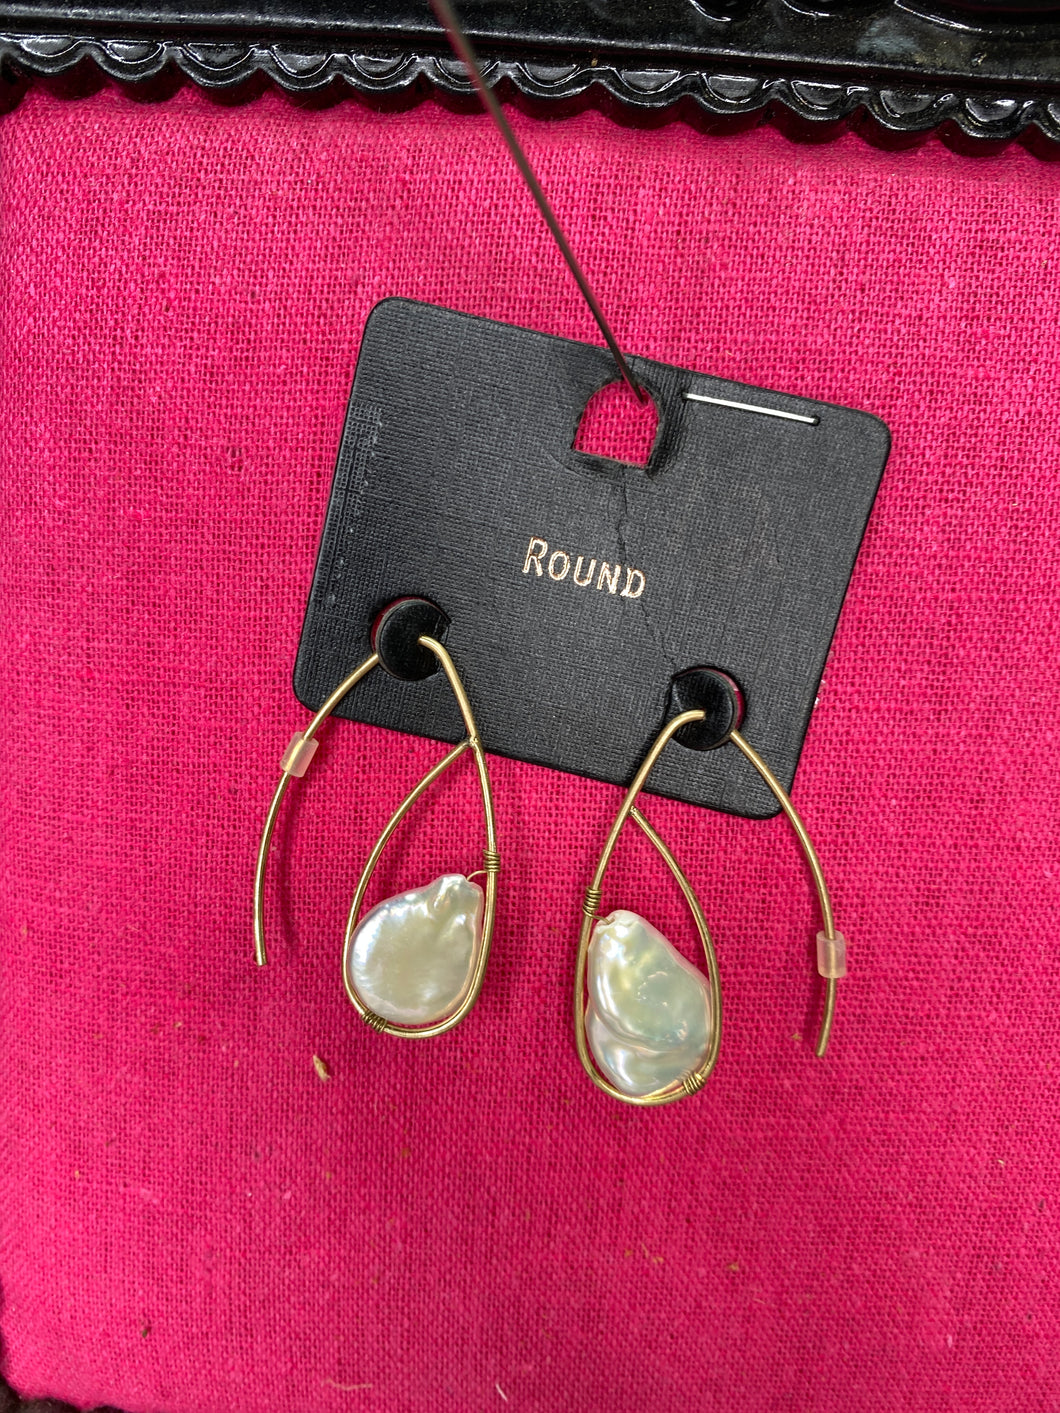 Seed Pearl gold earrings